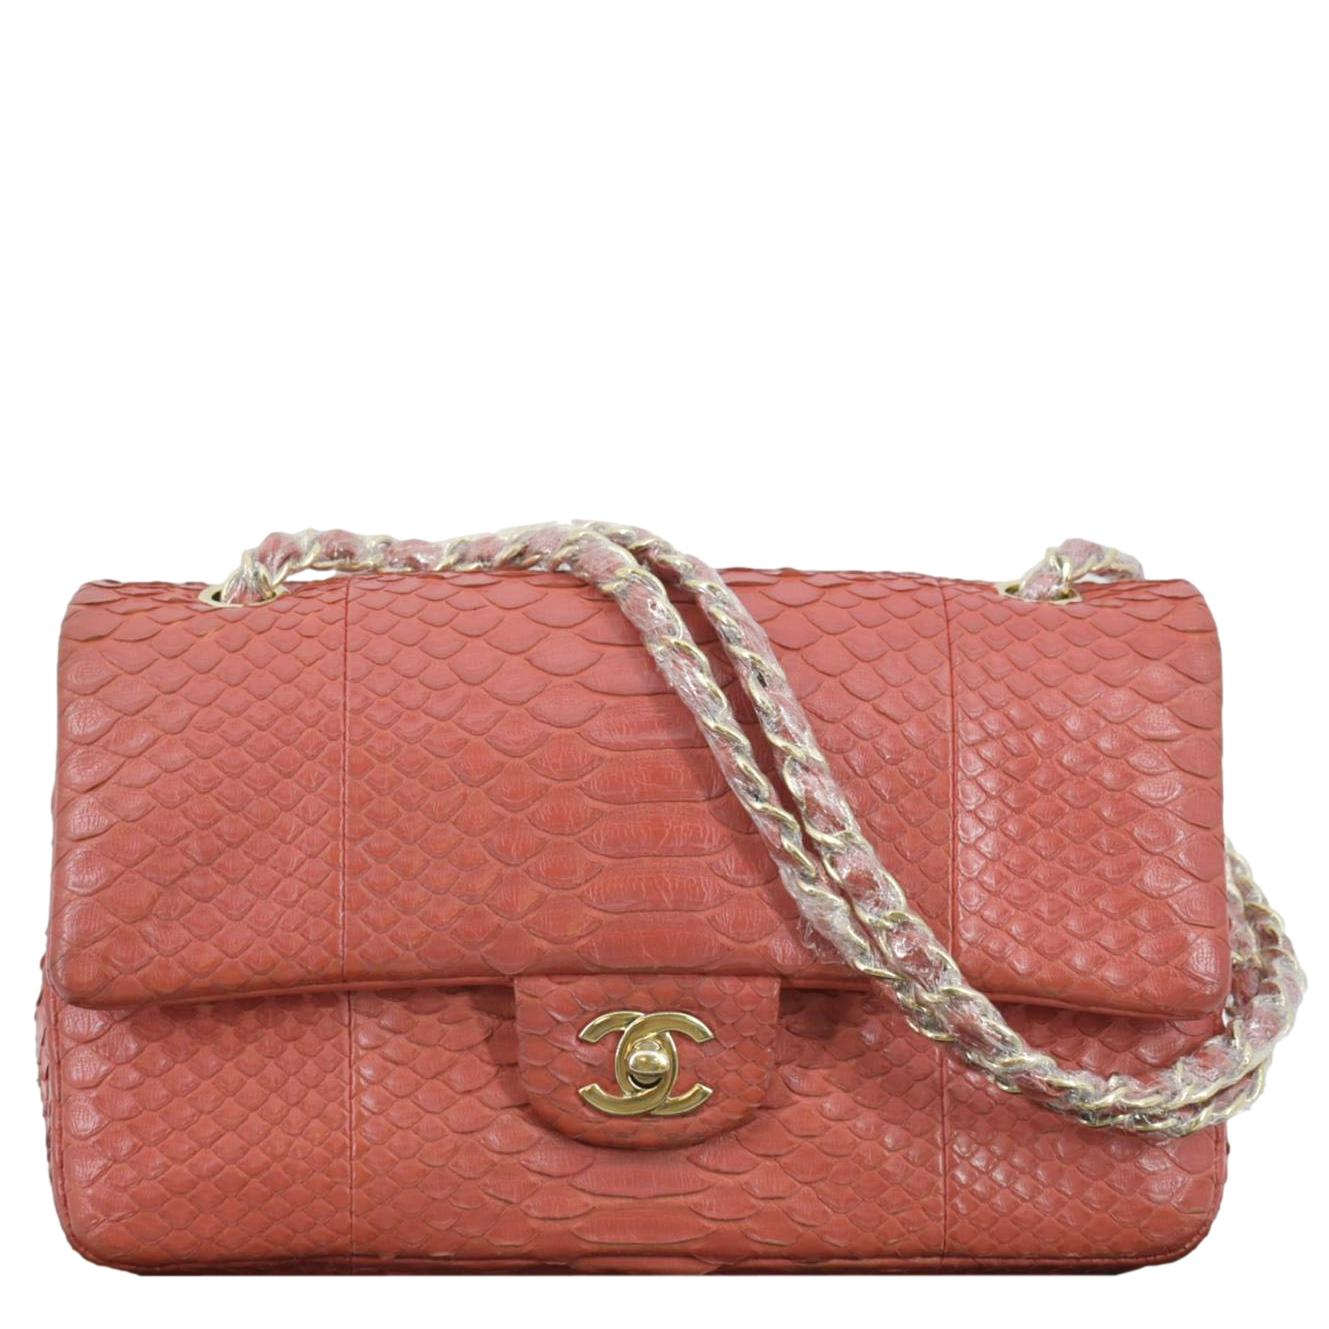 Chanel Pink Full Flap Bag - Get Your Designer Bag